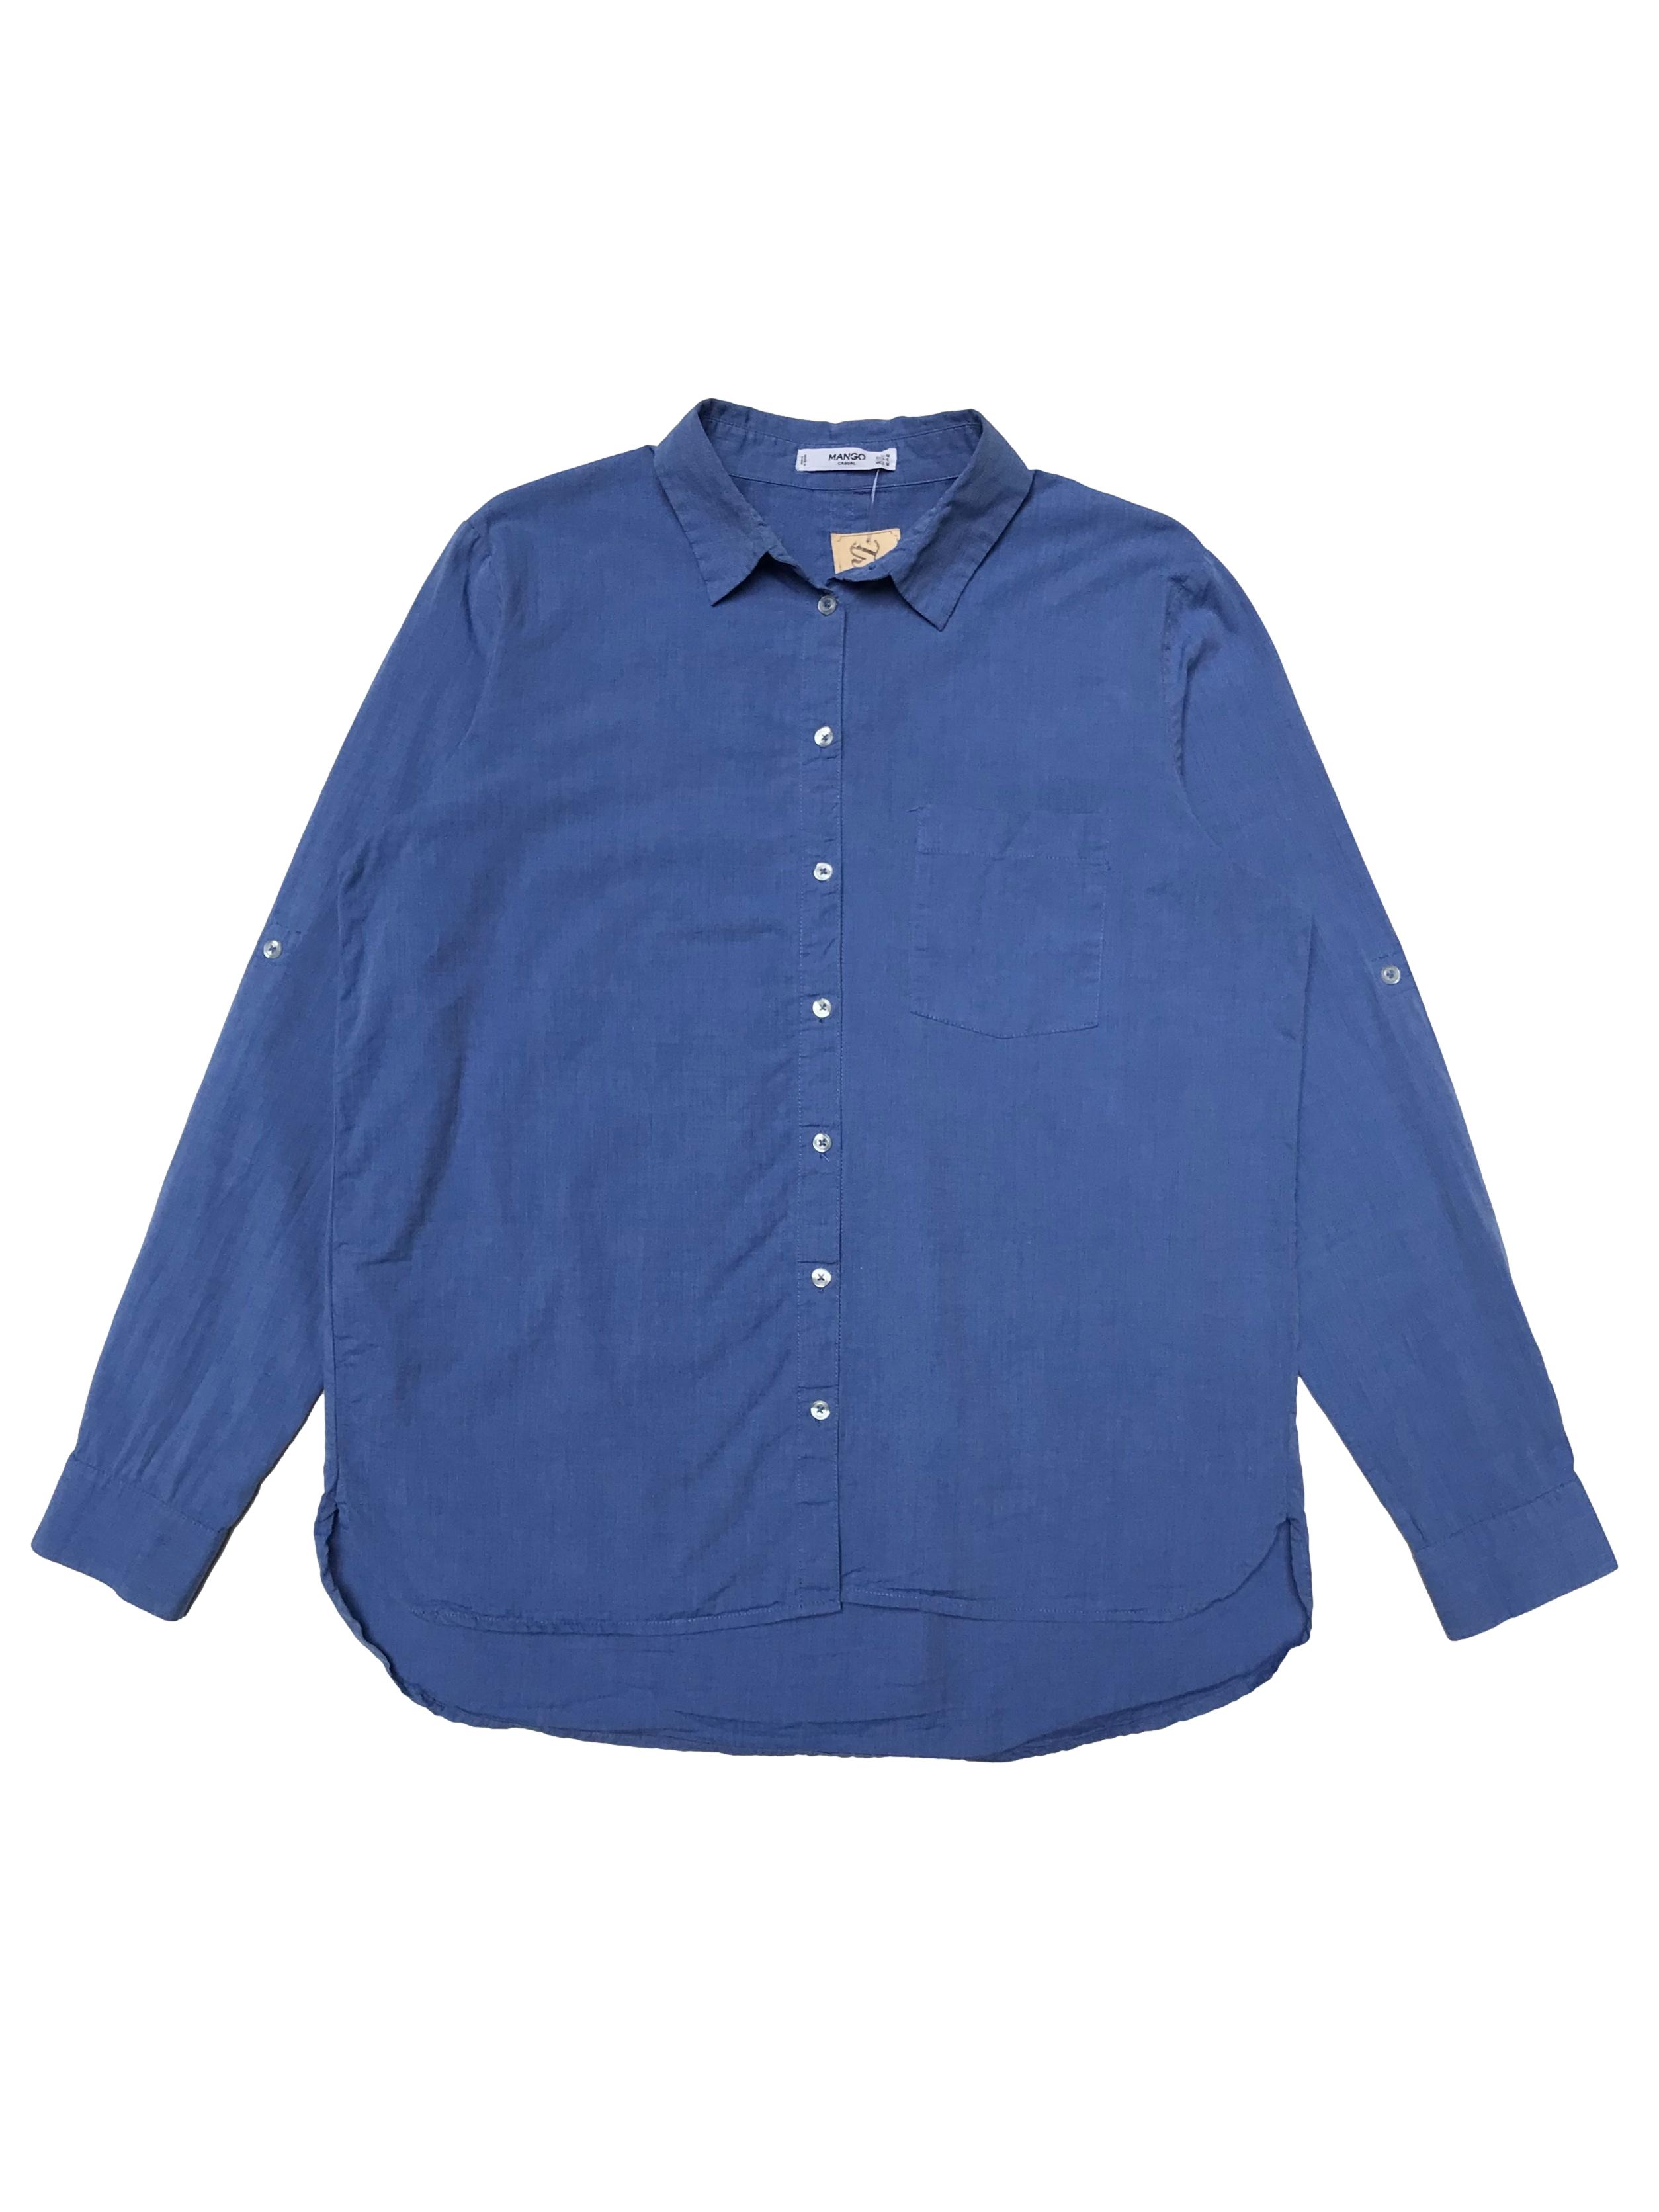 Camisa Mango 100% algodón azul, tiene bolsillo en el pecho, manga larga regulable con botón. Ancho 106cm Largo 60-65cm. Precio original S/ 149